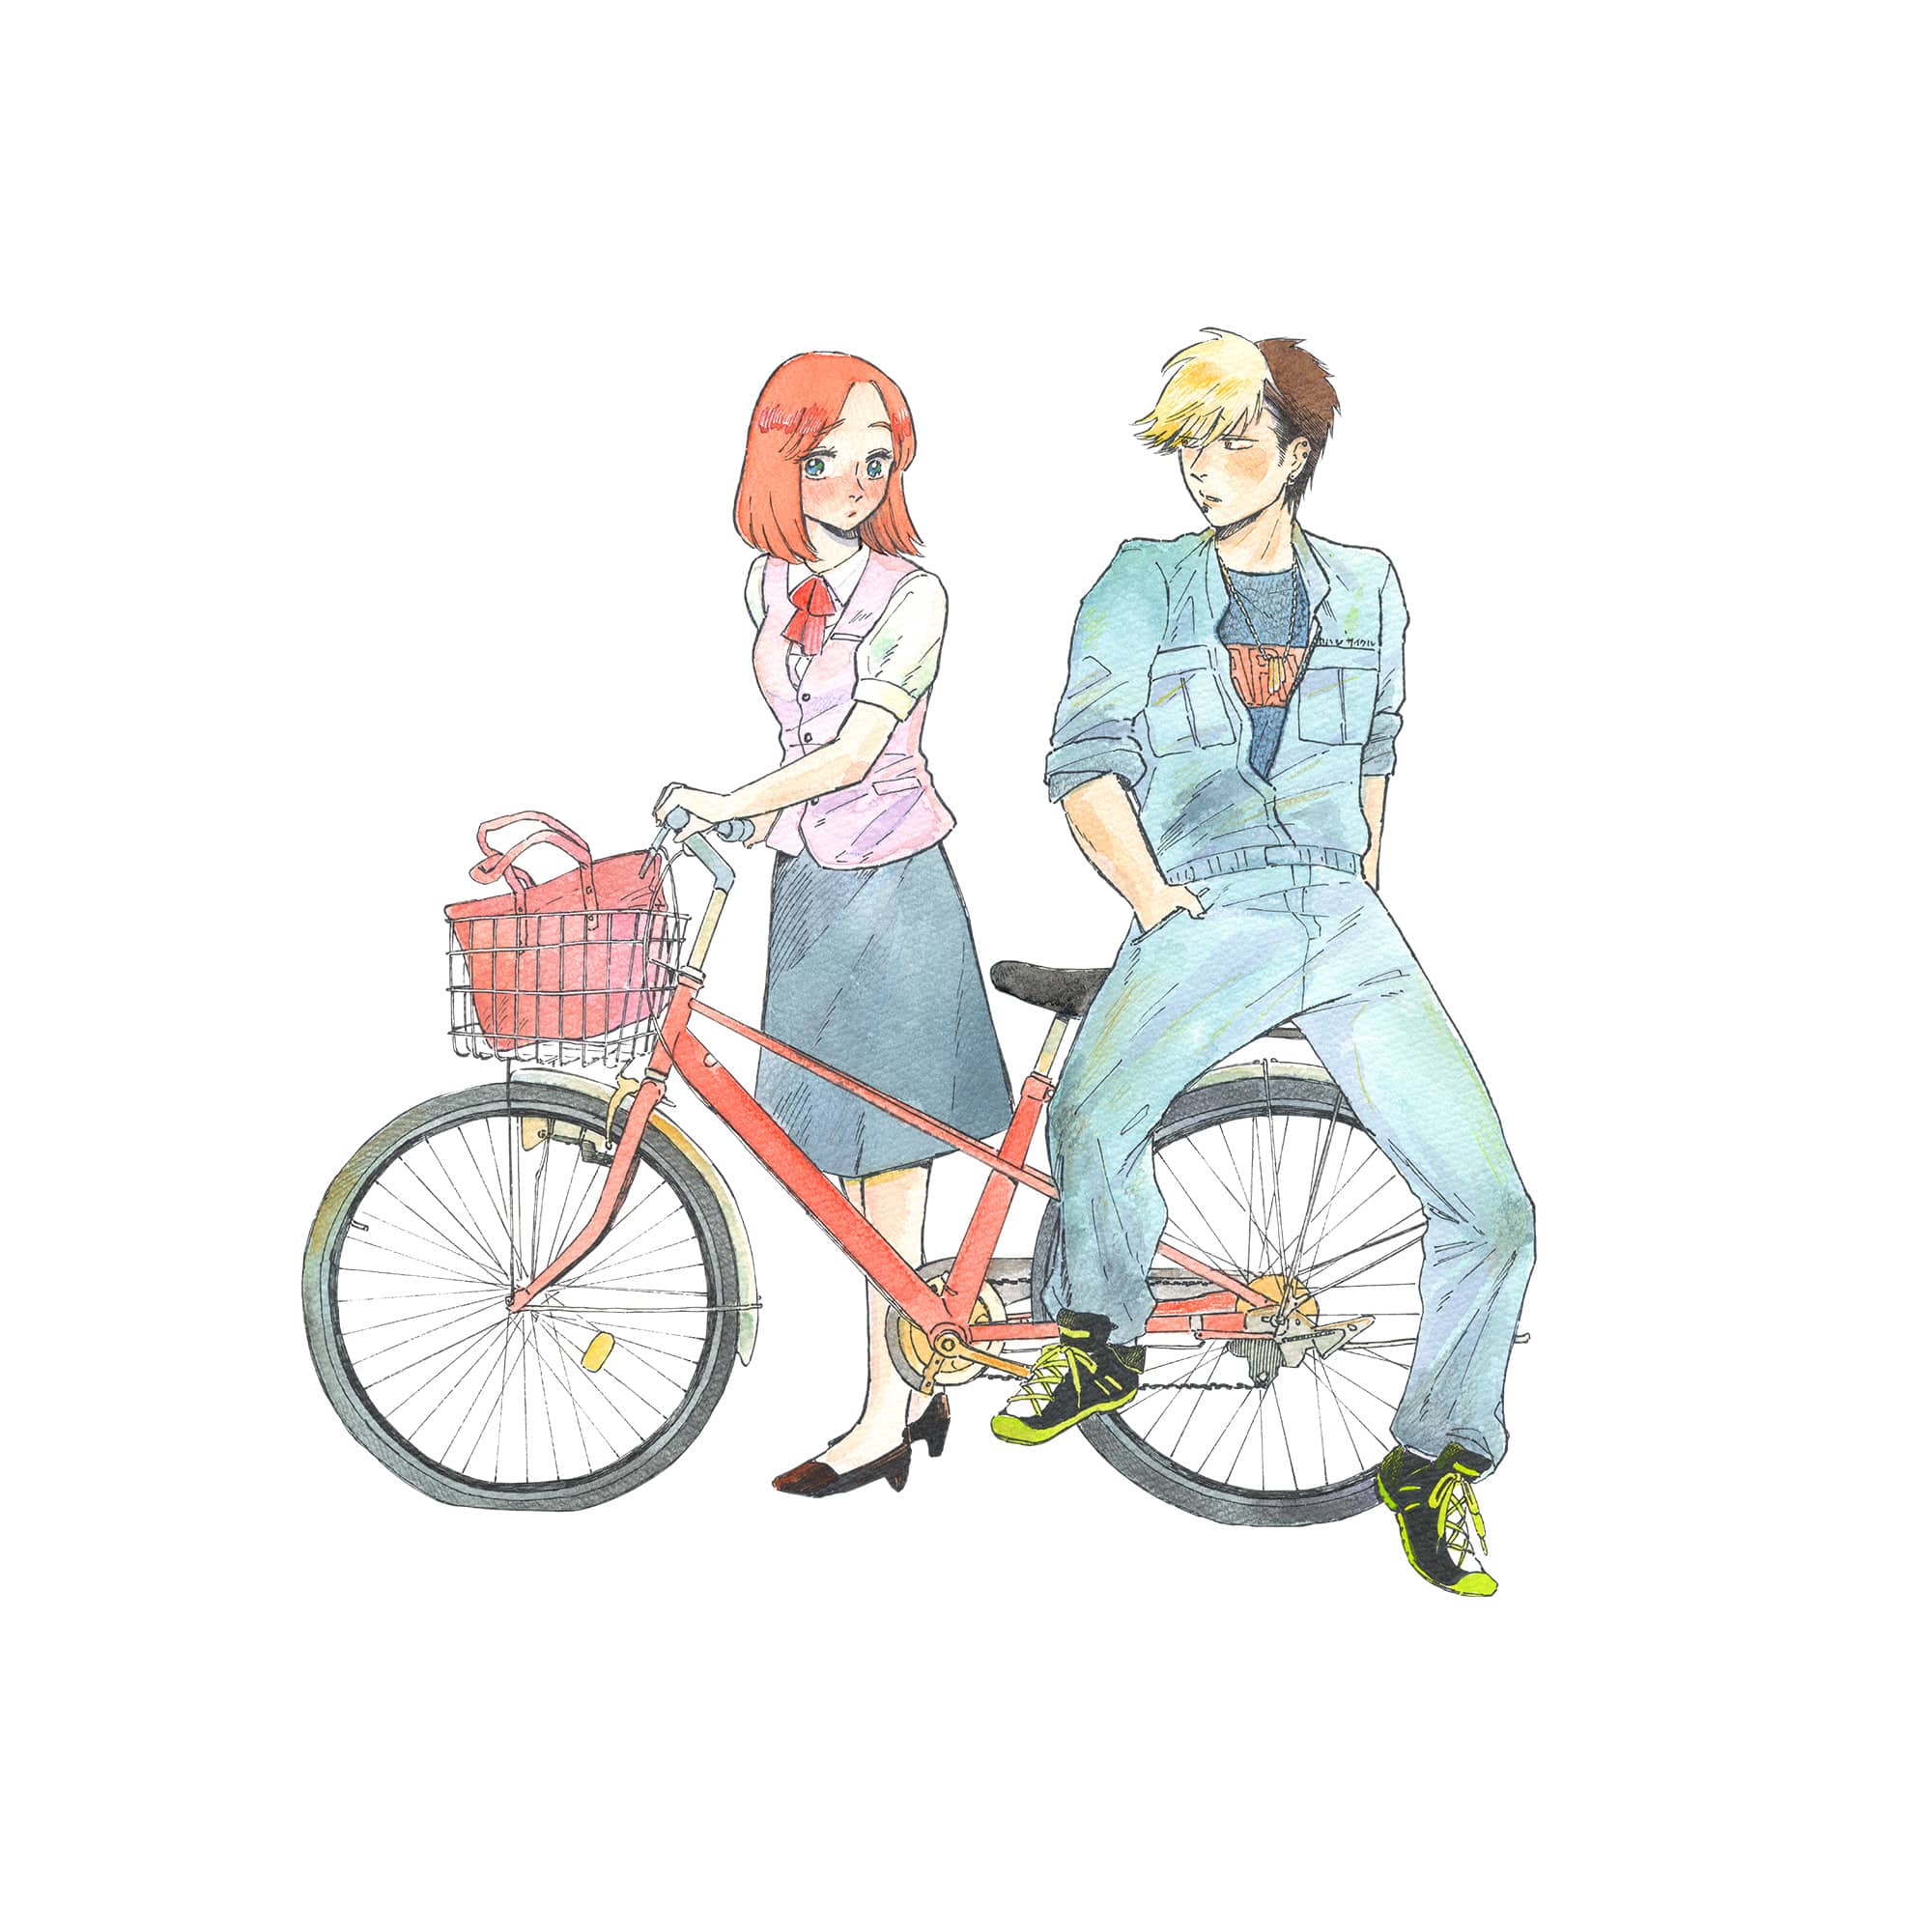 松虫あられ『自転車屋の高橋くん』コミック1巻 表紙原画